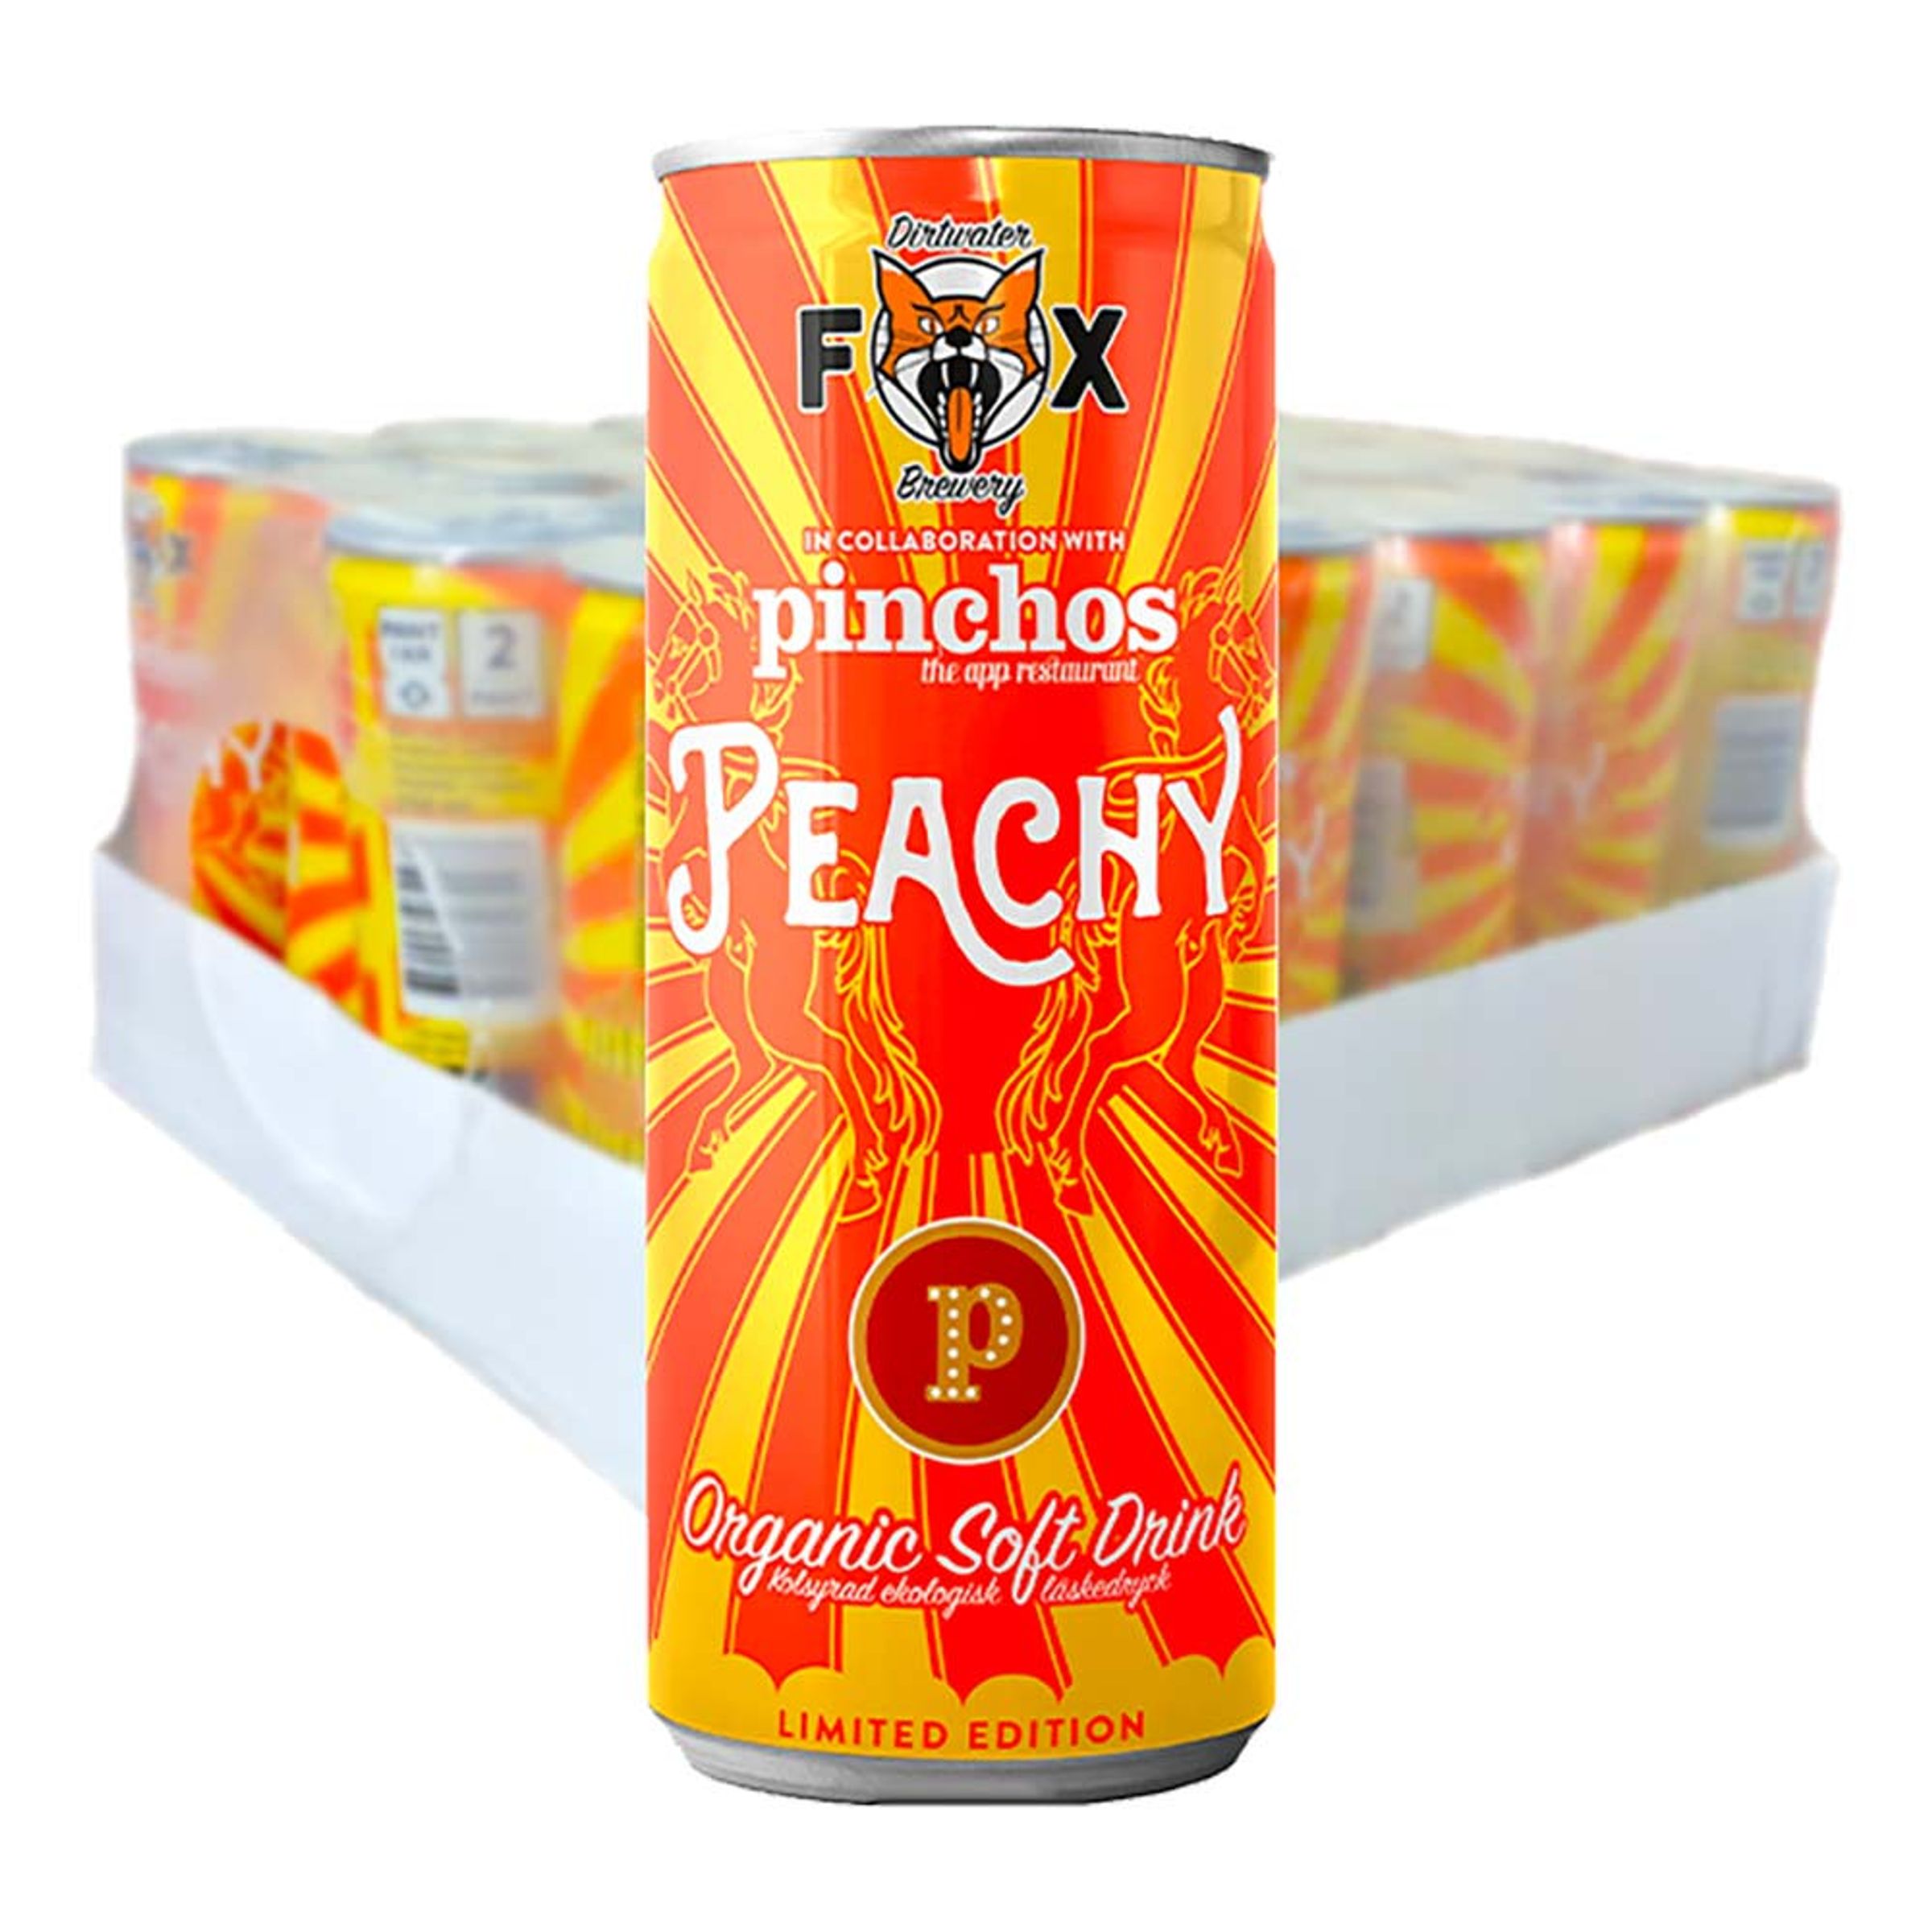 Fox Pinchos Peachy - 24-pack